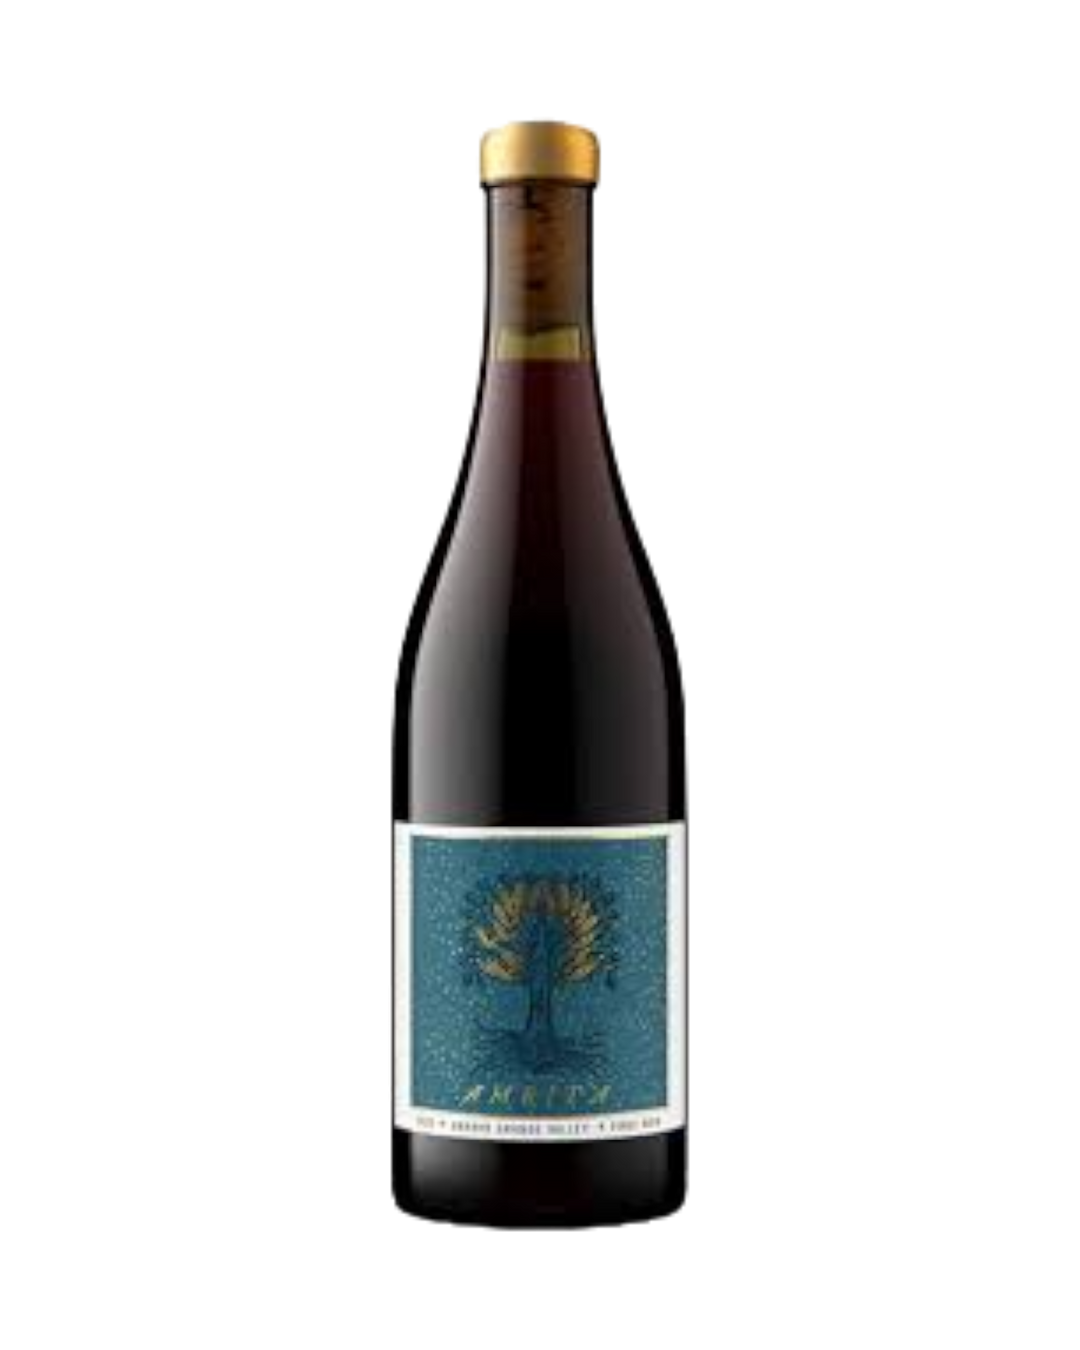 Raj Parr Wines Arroyo Grande Valley Amrita Pinot Noir